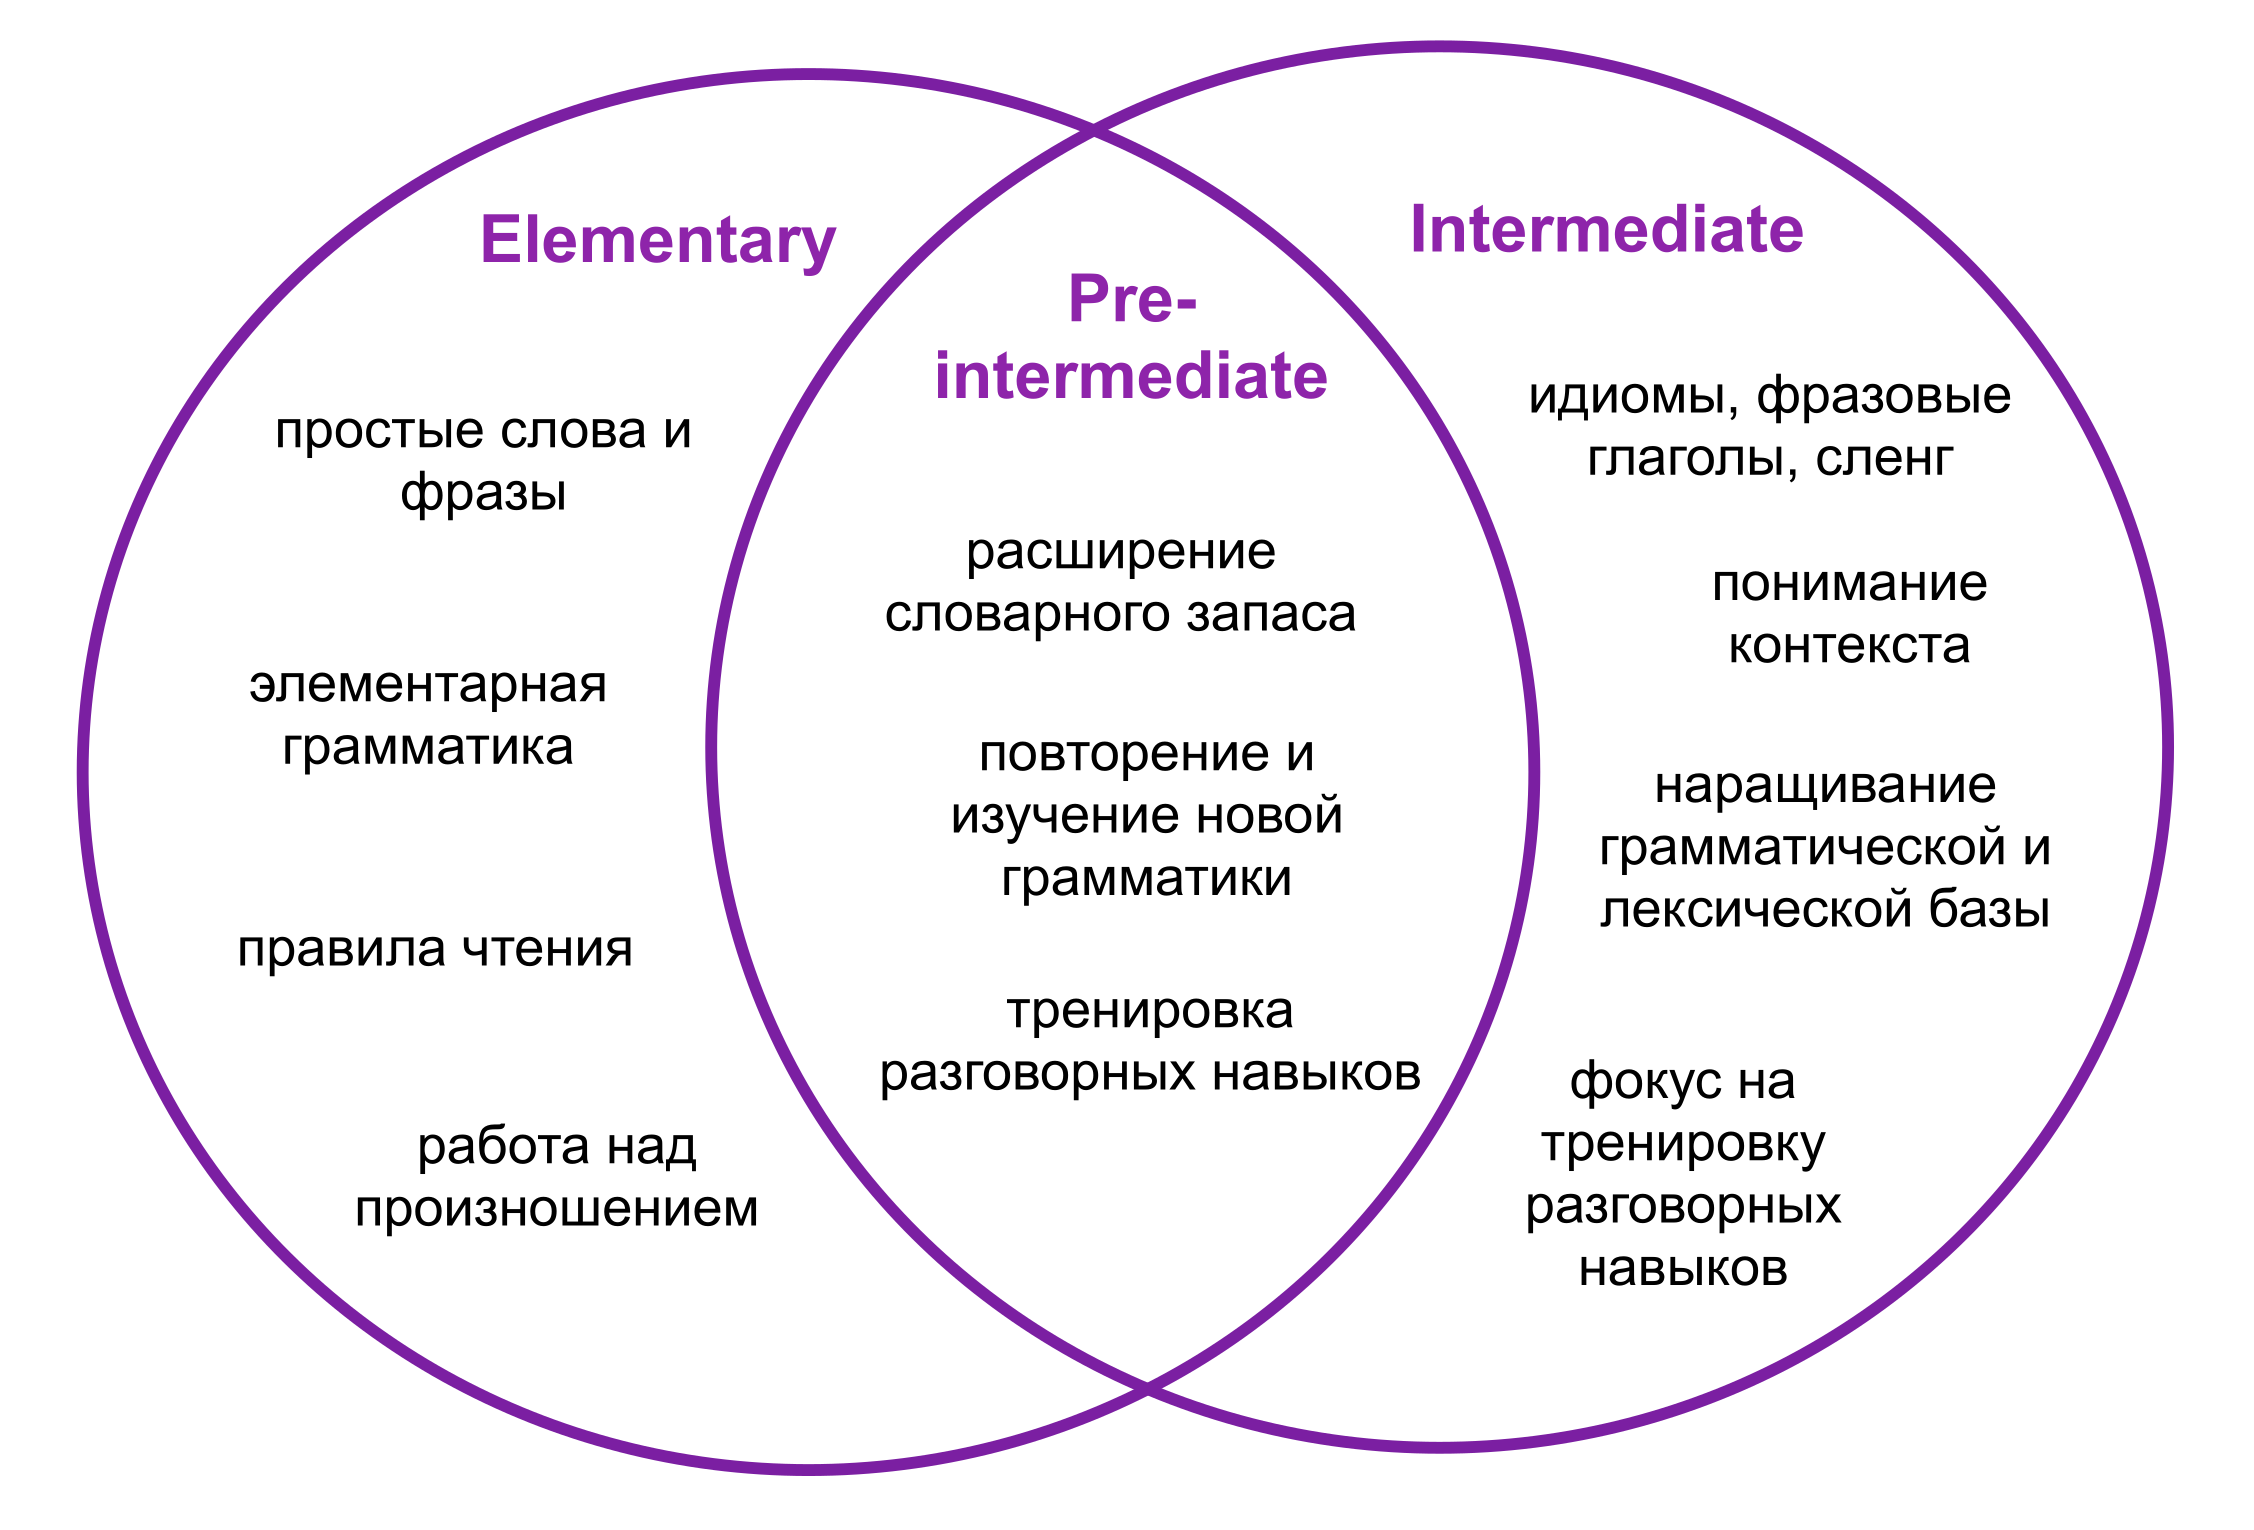 Pre-intermediate